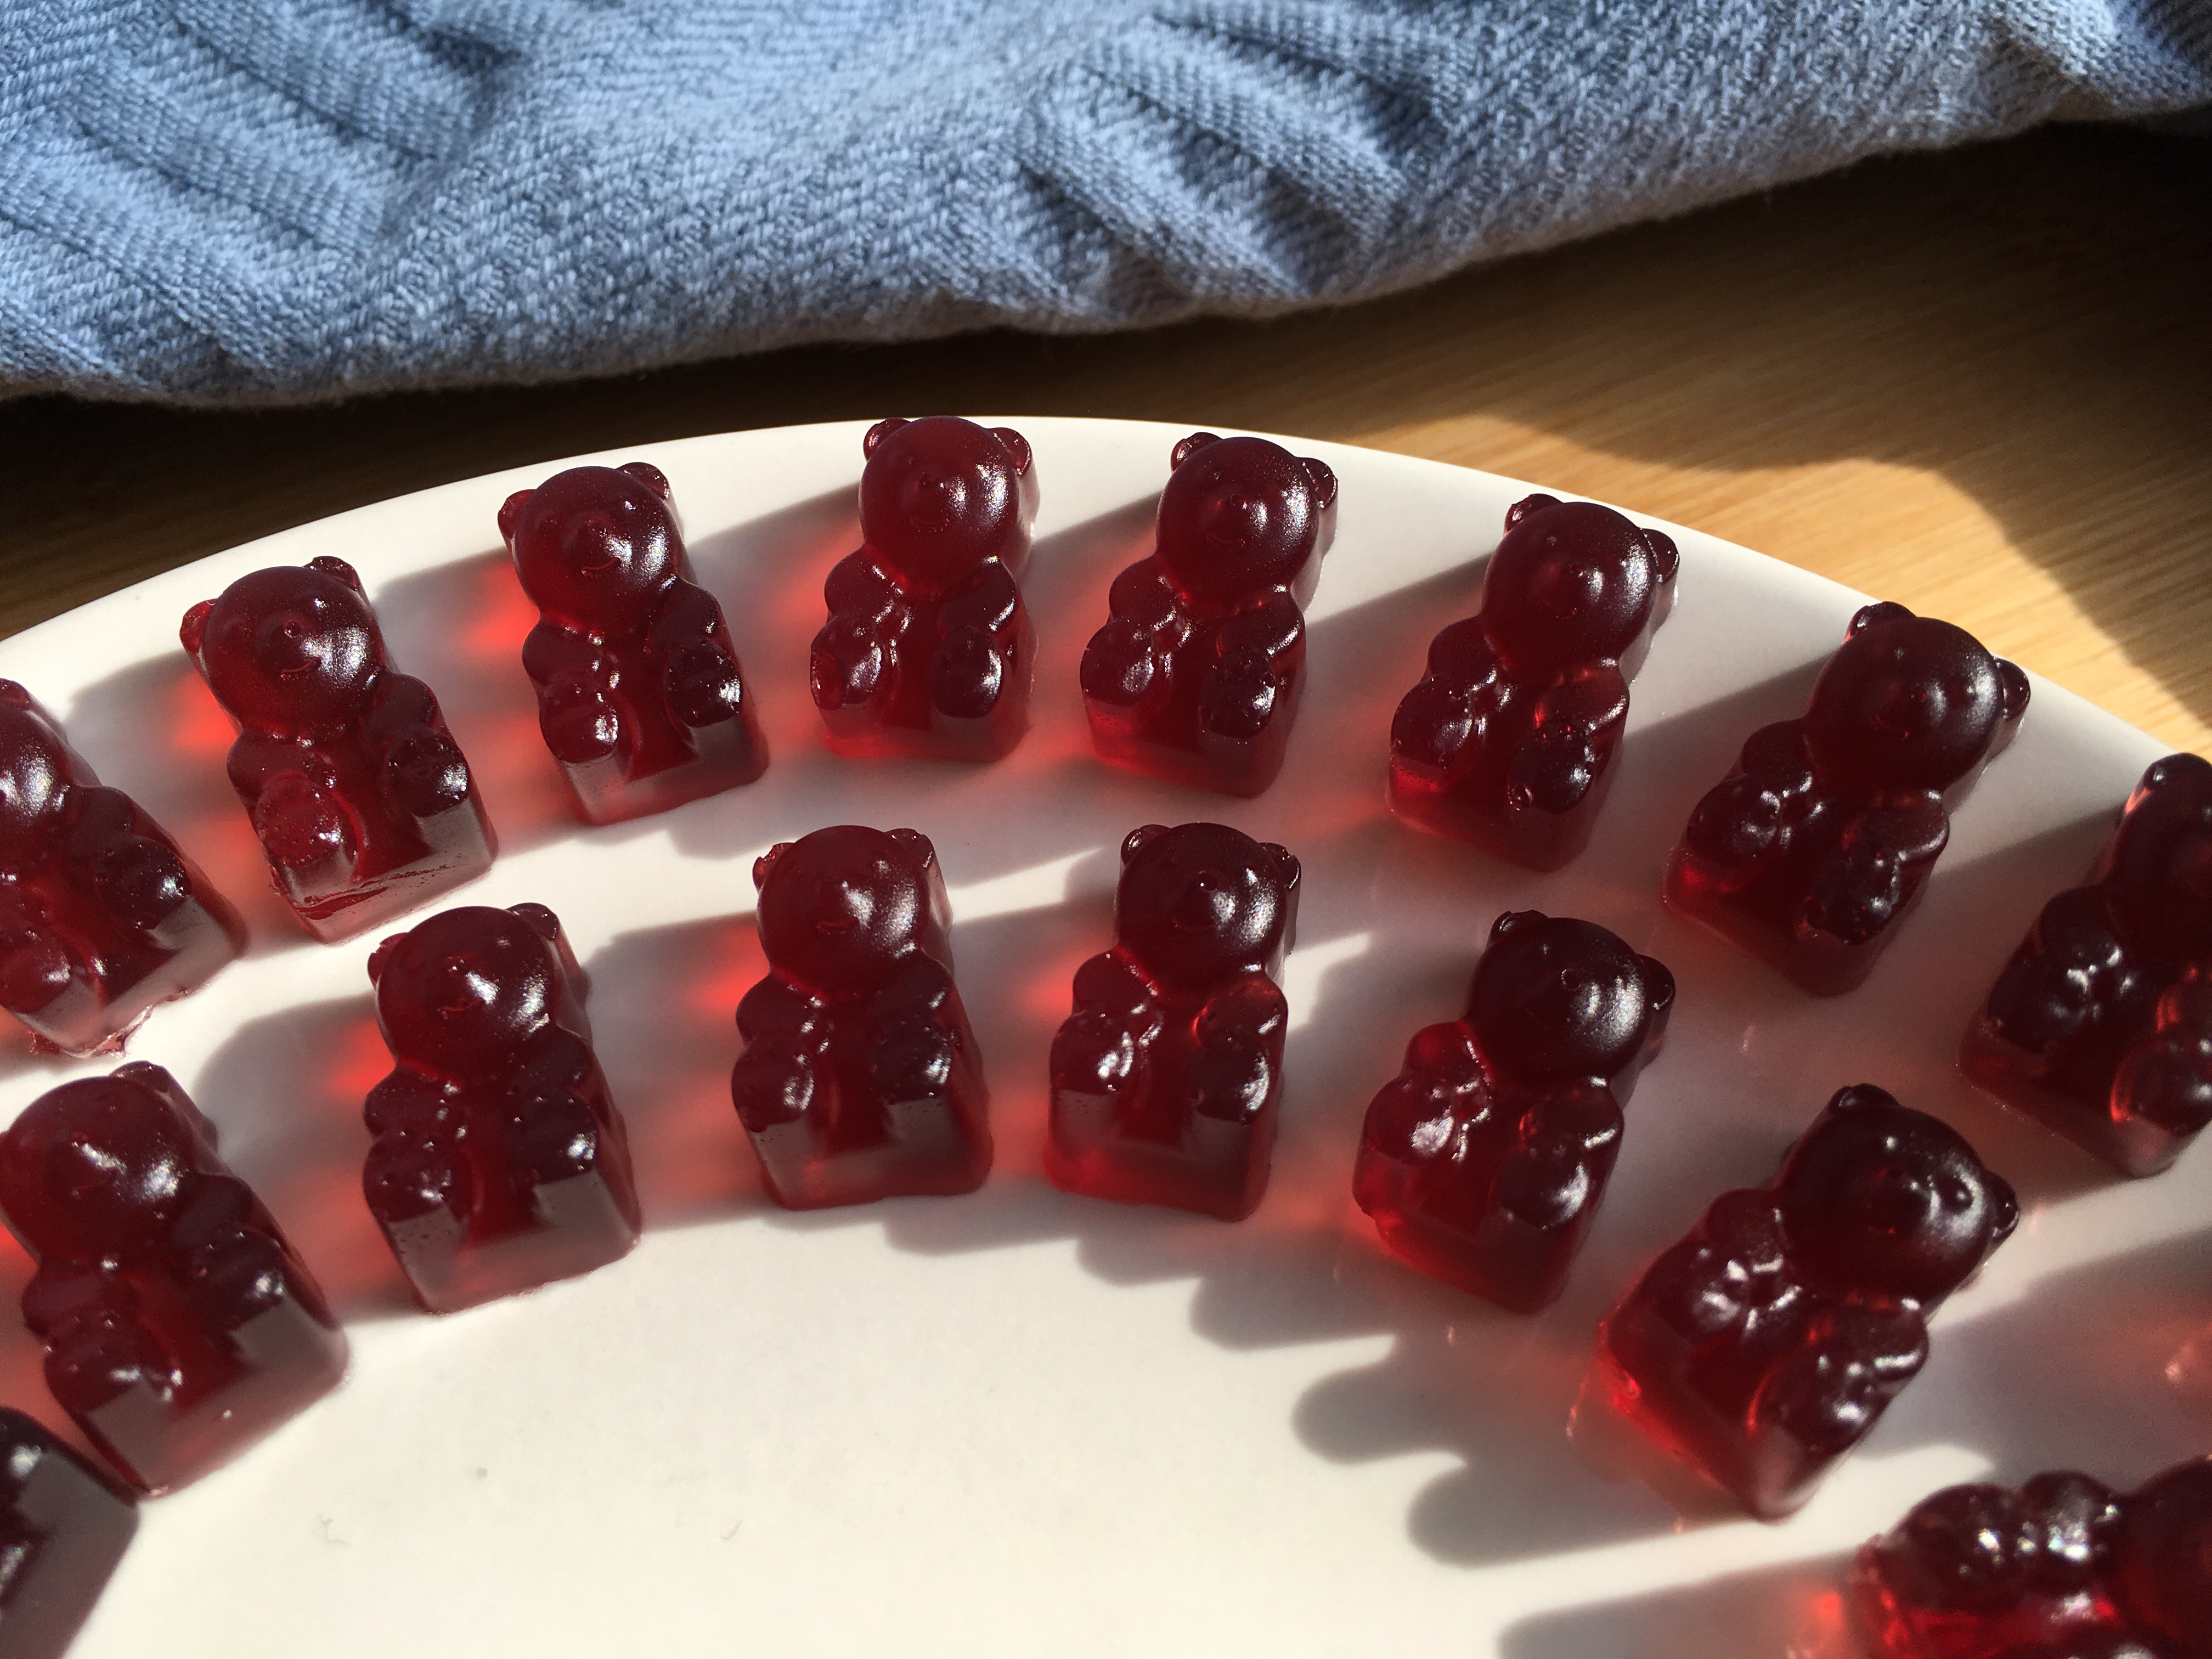 Homemade Red Gummy Bears - Little Gut Healing Treats